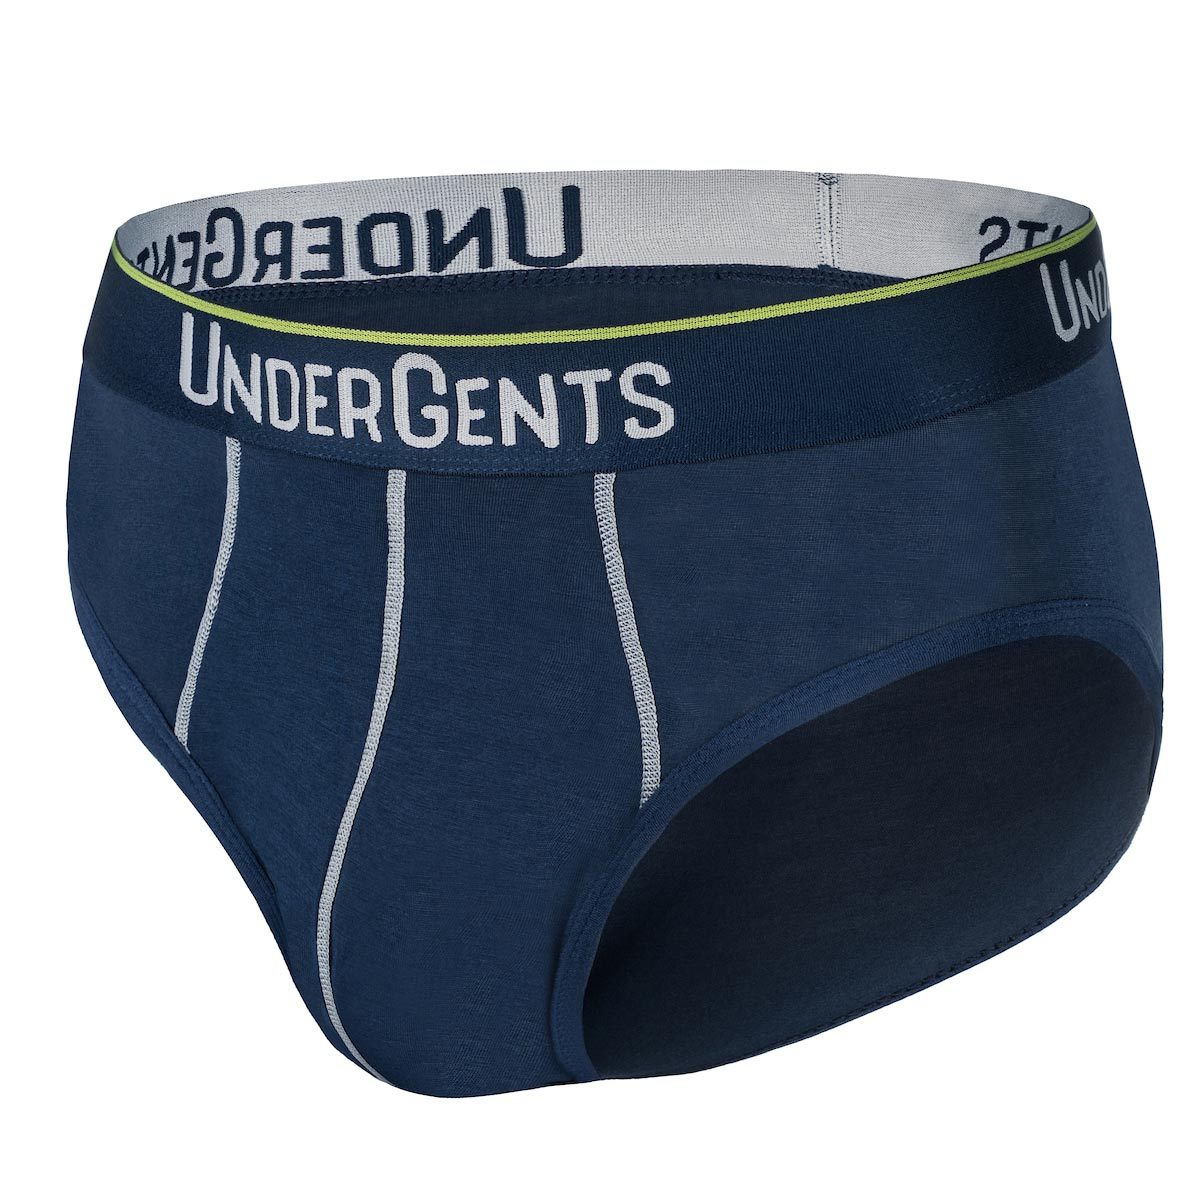 https://www.undergents.com/cdn/shop/products/inspirato-modern-brief-new-underwear-undergents-s-navy-blue-655595.jpg?v=1579037086